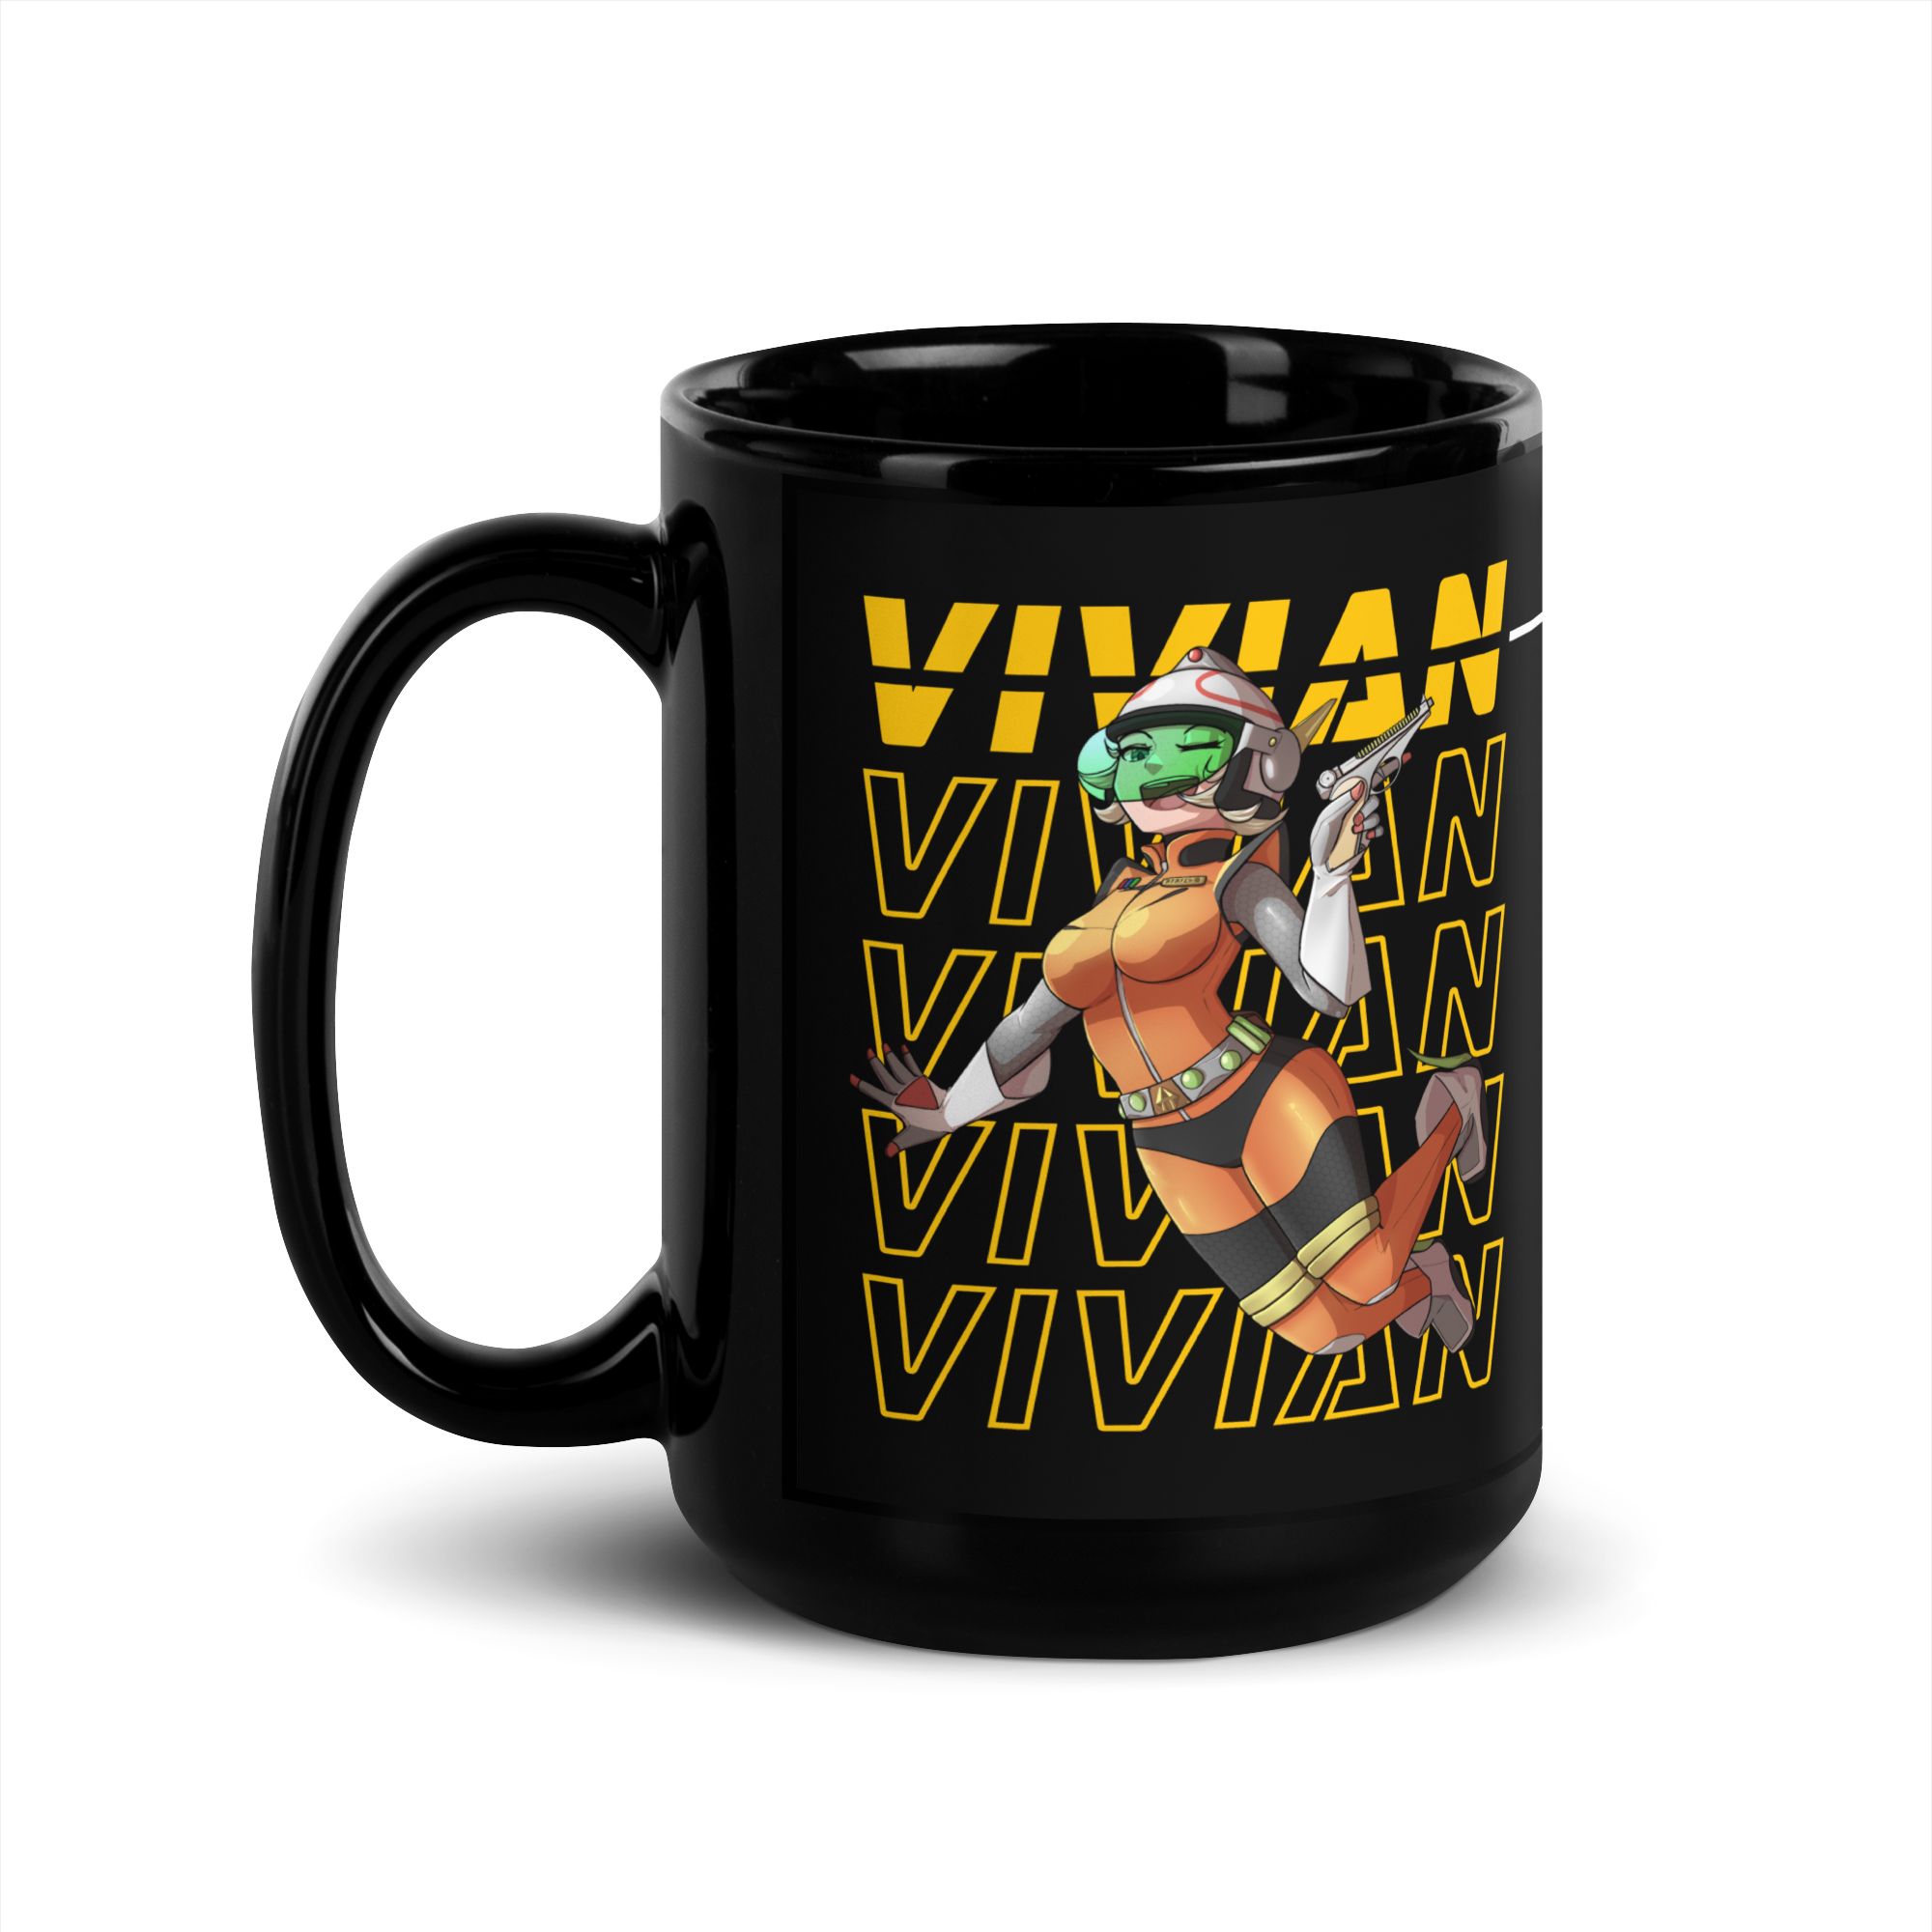 Vivian mug